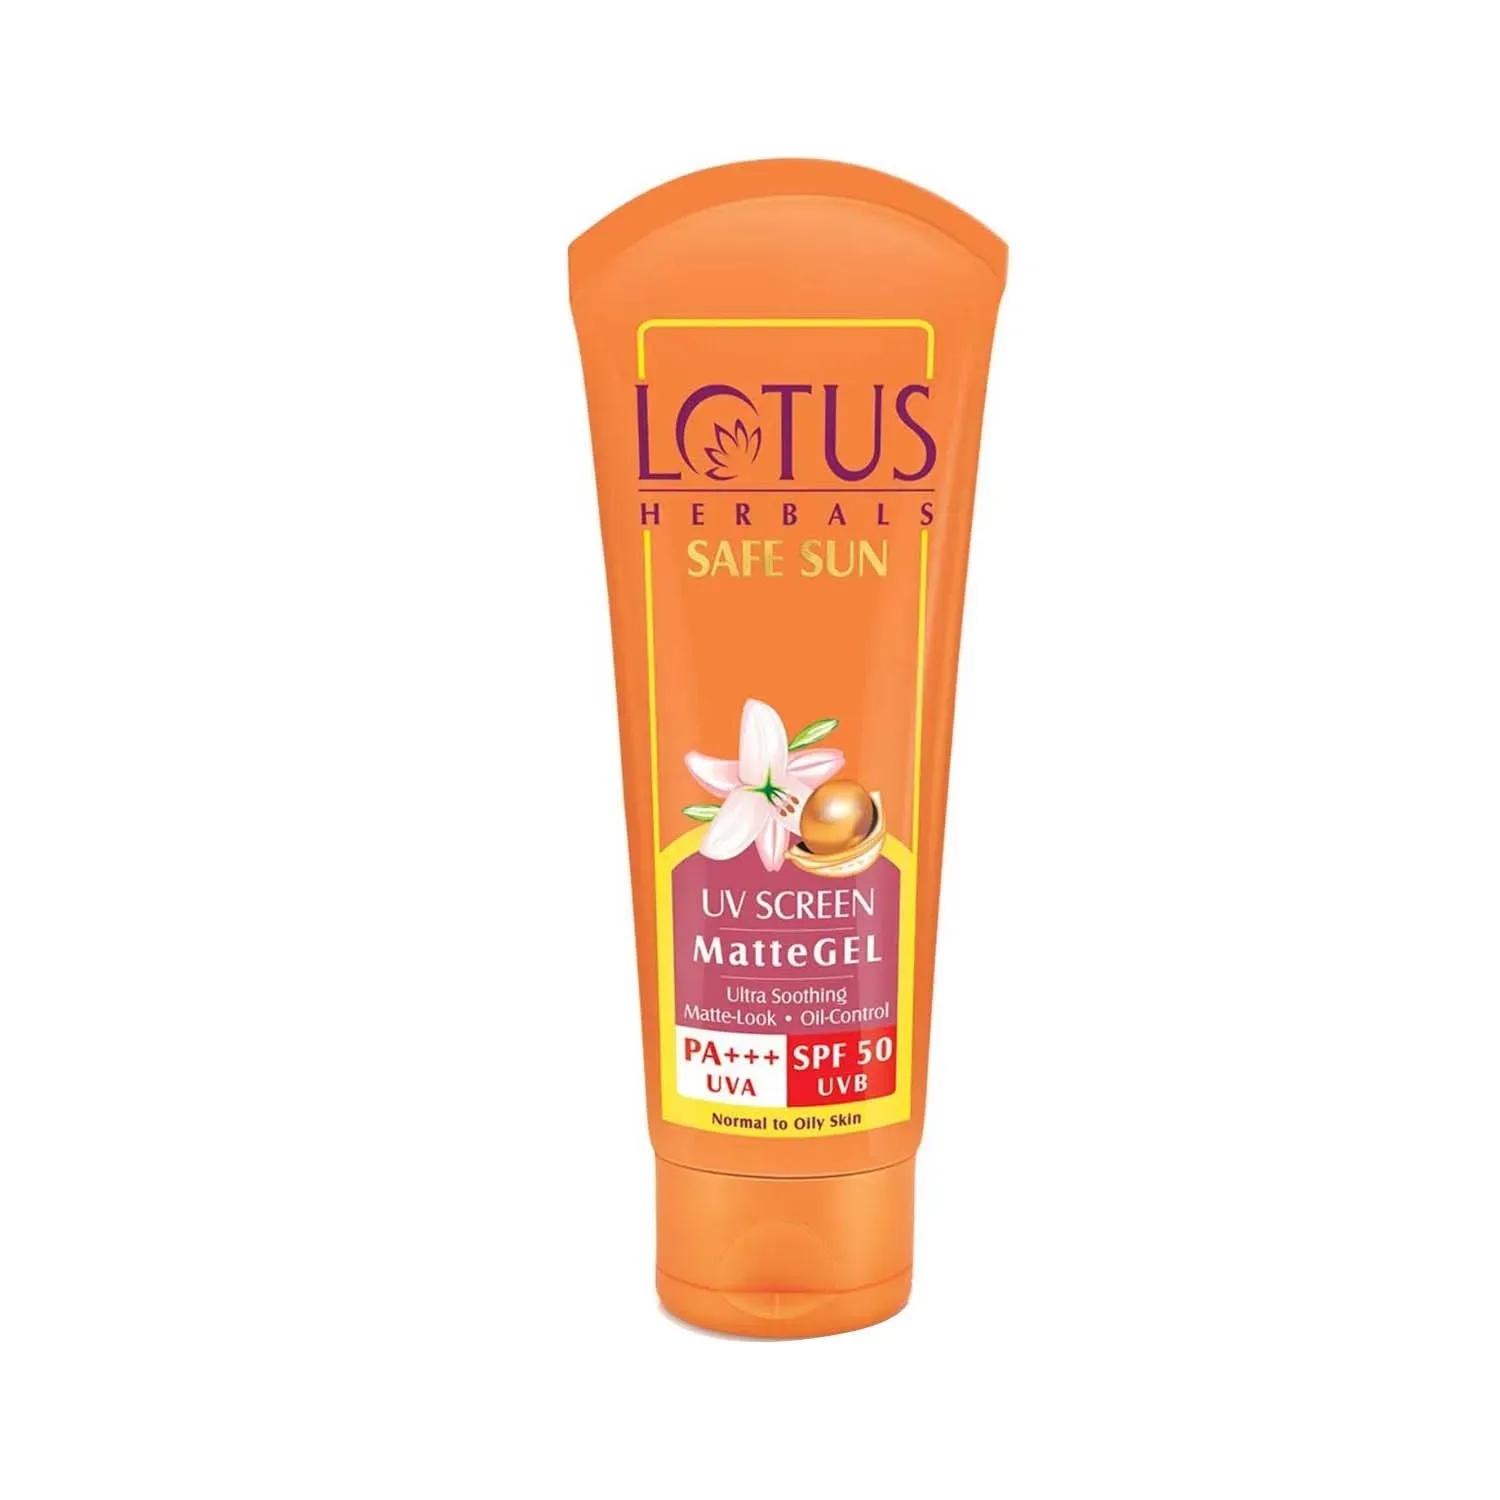 Lotus | Lotus Herbals Safe Sun UV Screen Matte Gel Pa+++ SPF 50 Sunscreen - (50g)